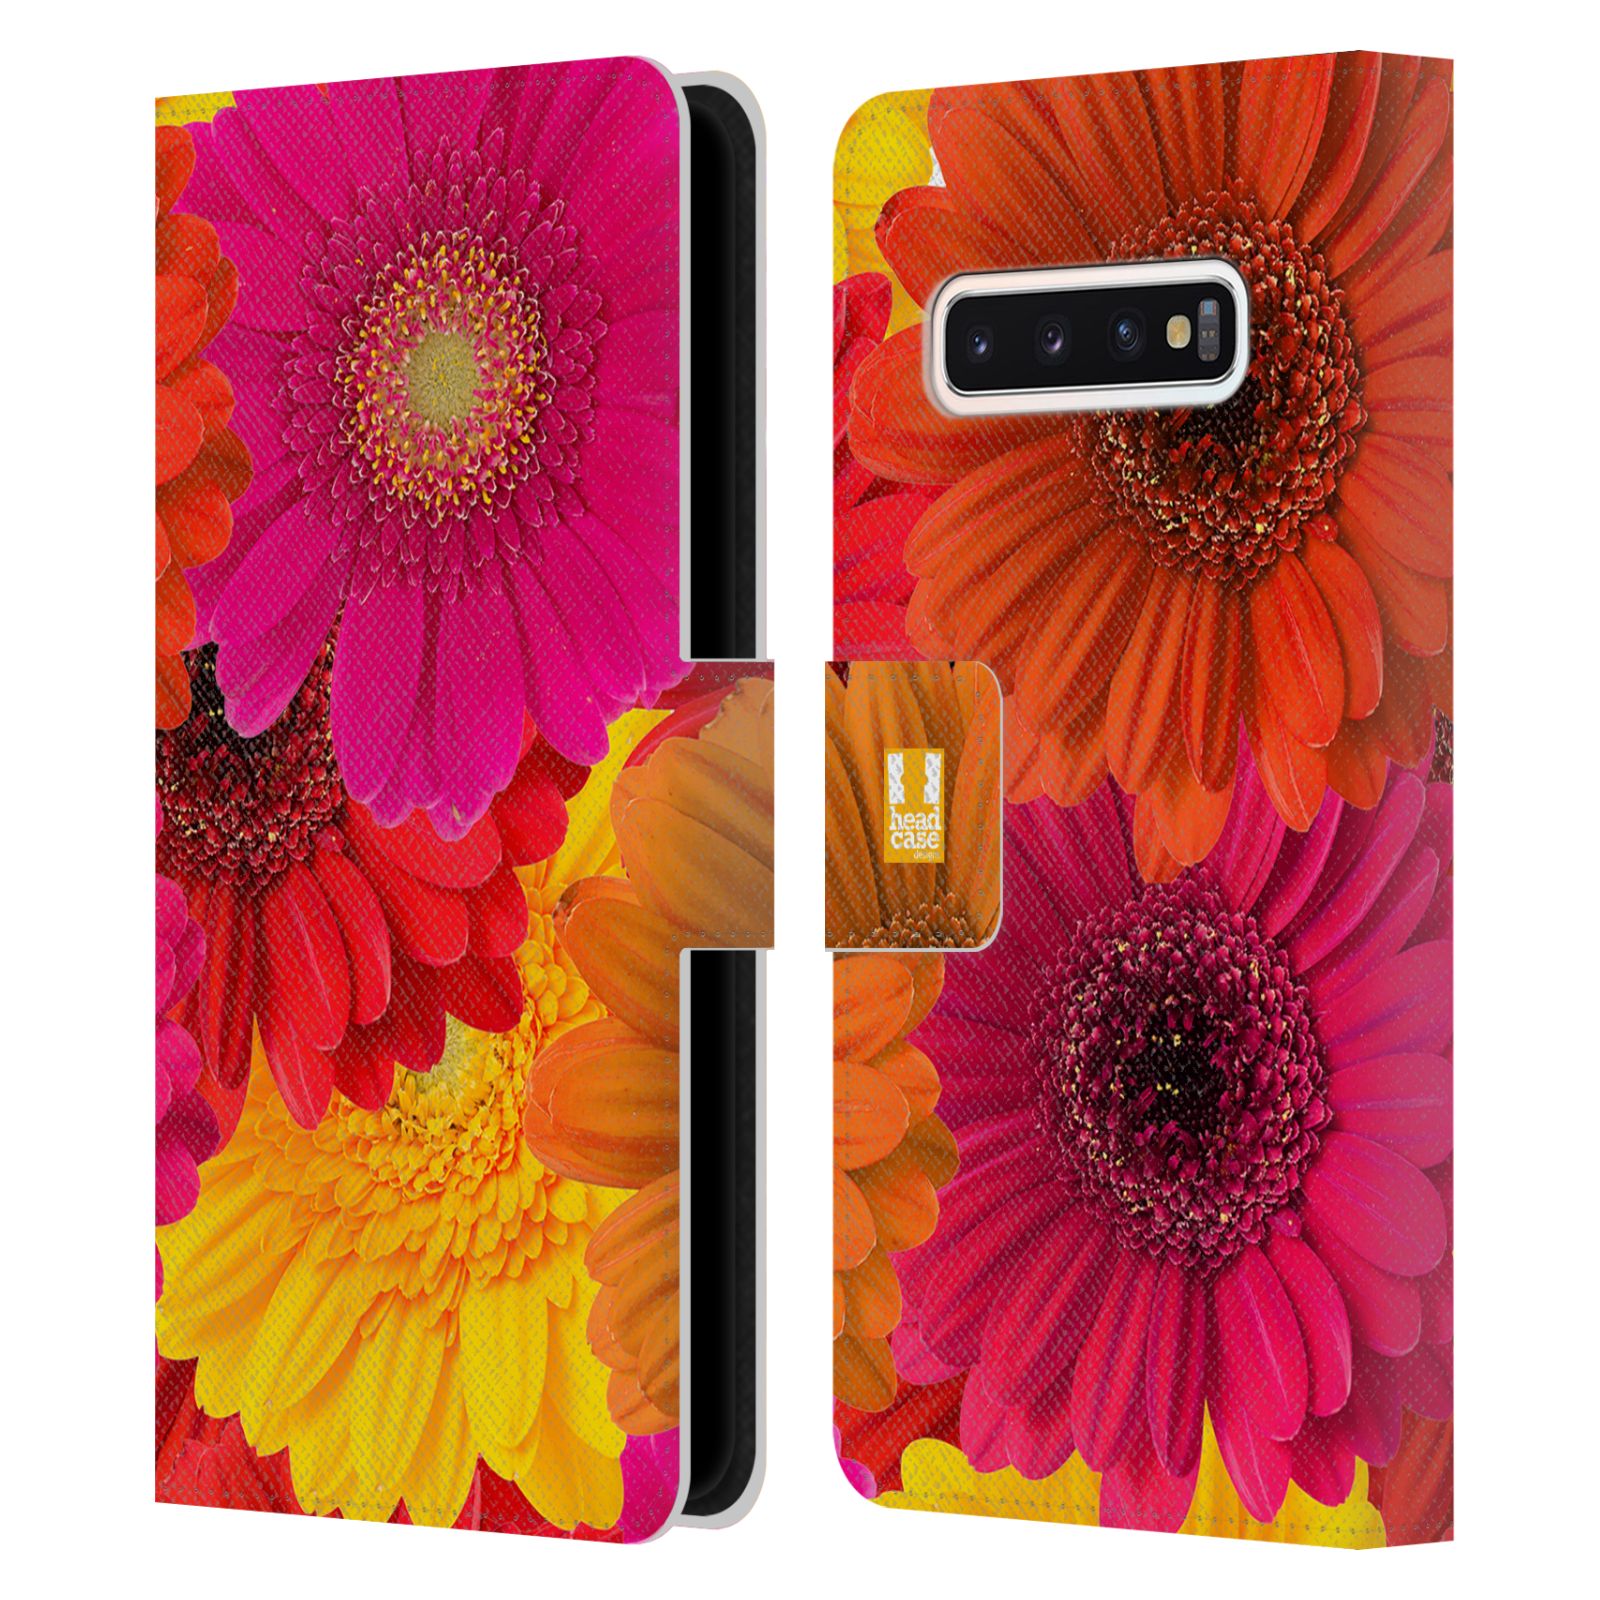 Pouzdro HEAD CASE na mobil Samsung Galaxy S10 květy foto fialová, oranžová GERBERA